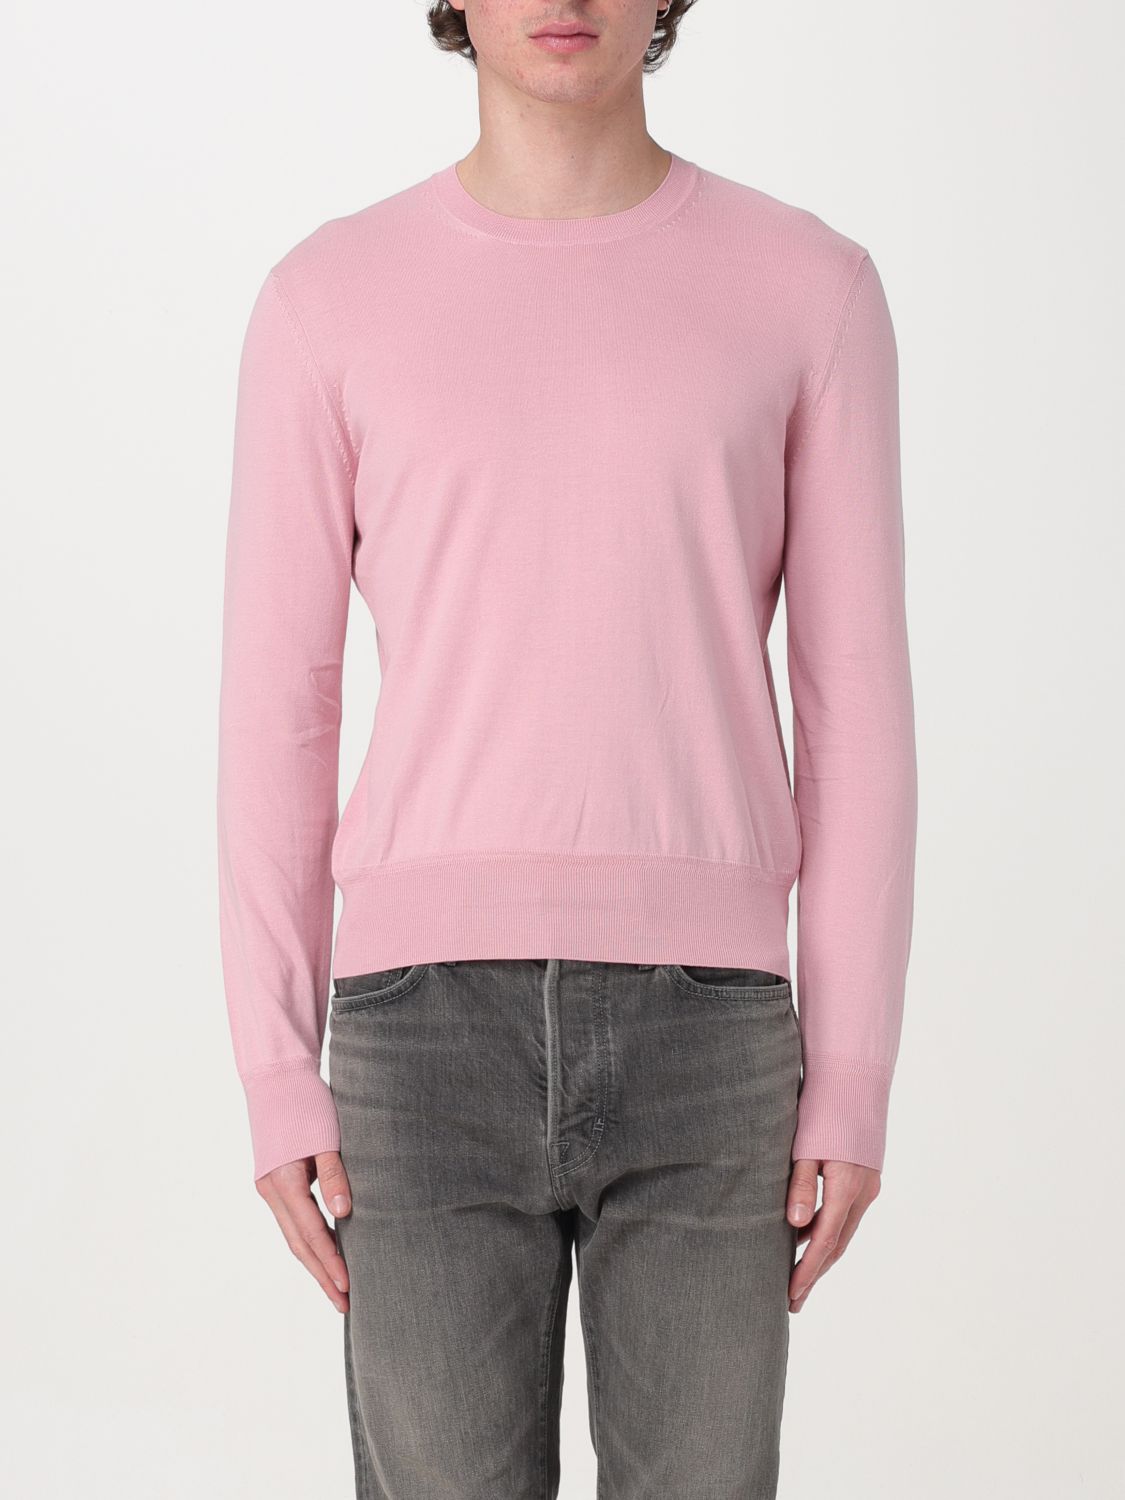 Tom Ford Sweatshirt  Men Color Pink